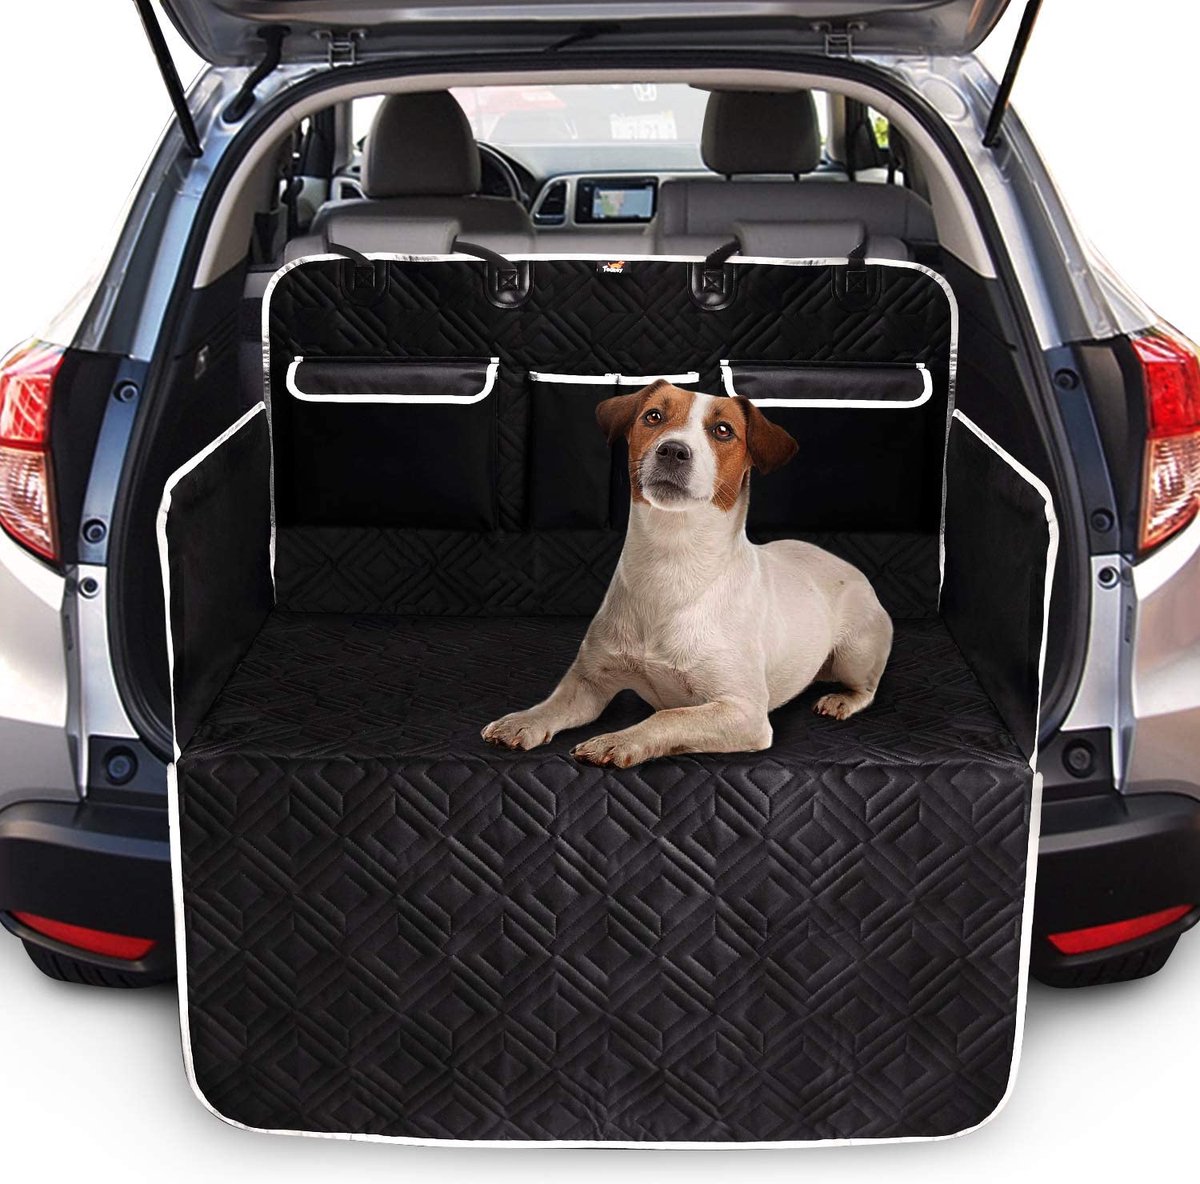 Toozey kofferbakbescherming, volledige bescherming, met 3 opbergvakken, scheurvaste en waterdichte hondendeken voor in de auto, kofferbakbescherming met zijbescherming, beschermt tegen vuil, krassen en hondenhaar